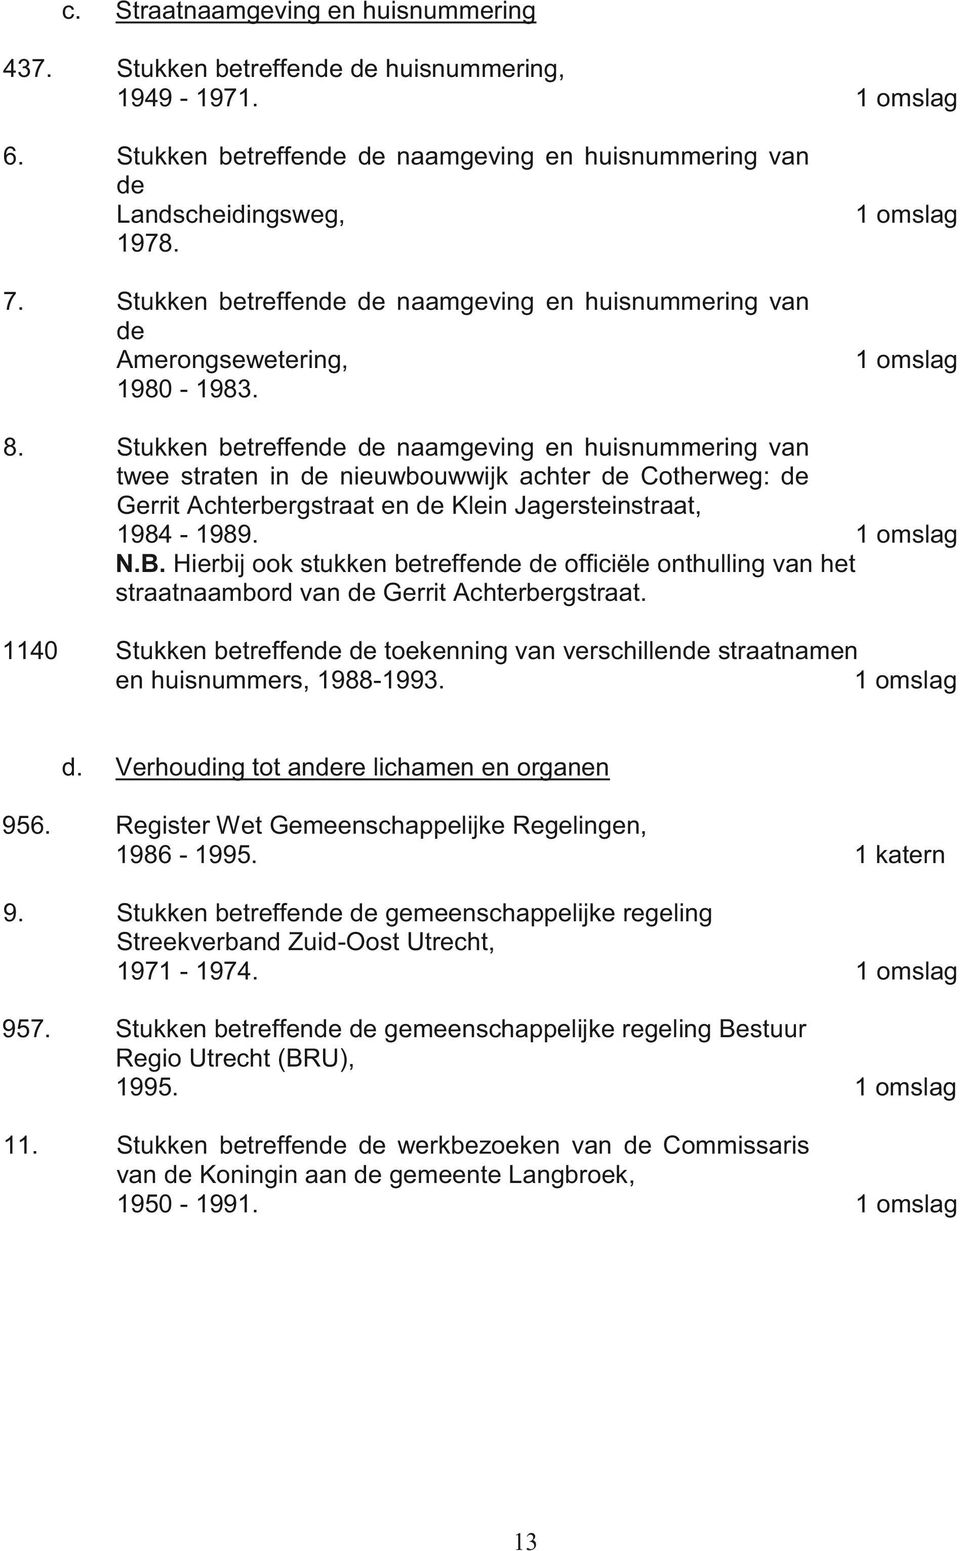 Stukken betreffende de naamgeving en huisnummering van twee straten in de nieuwbouwwijk achter de Cotherweg: de Gerrit Achterbergstraat en de Klein Jagersteinstraat, 1984-1989. N.B.